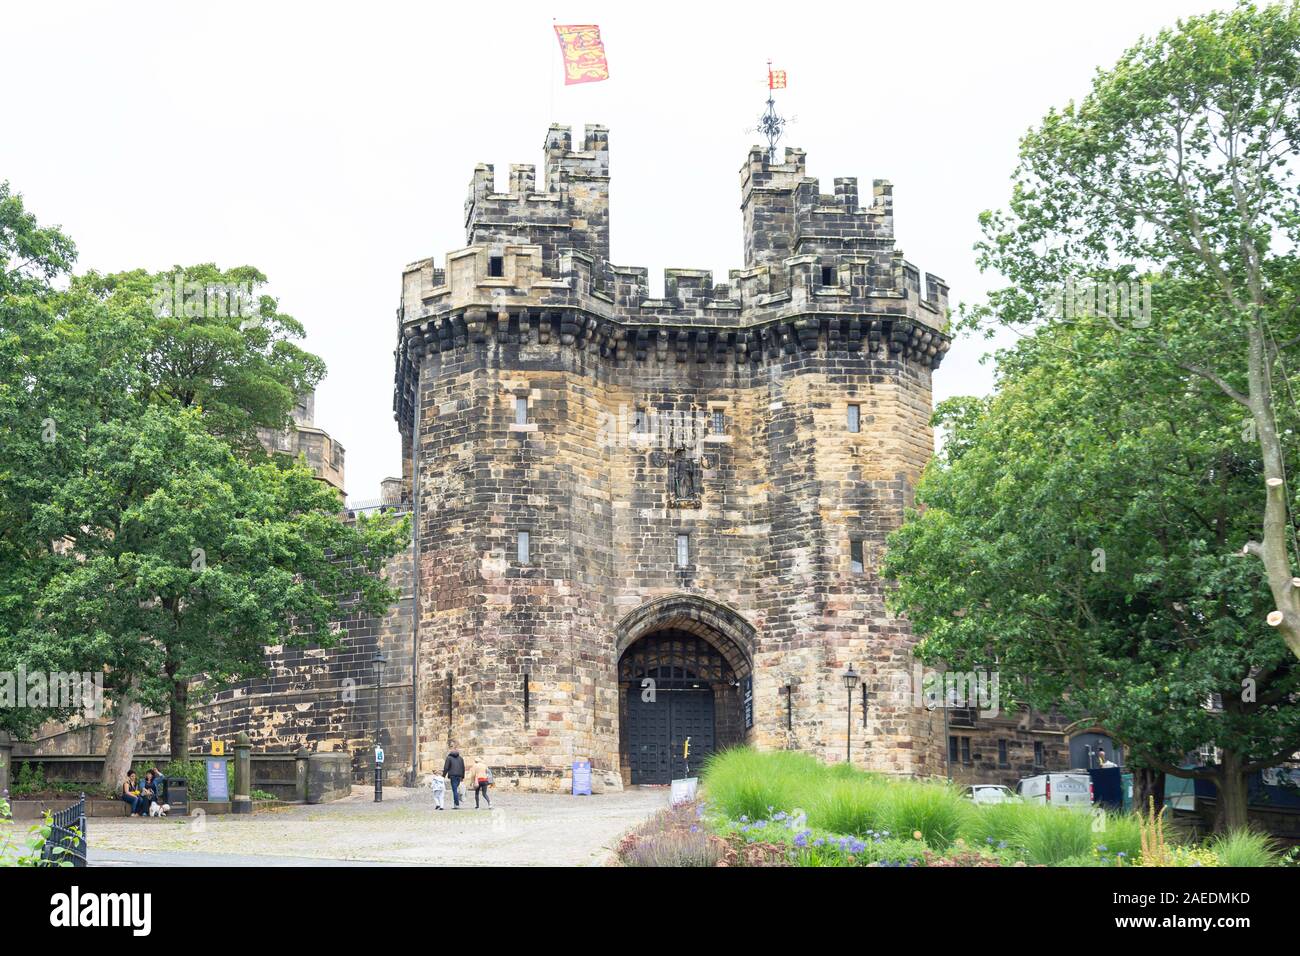 Entrée au château de Lancaster, Lancaster, Lancashire, Angleterre, Royaume-Uni Banque D'Images